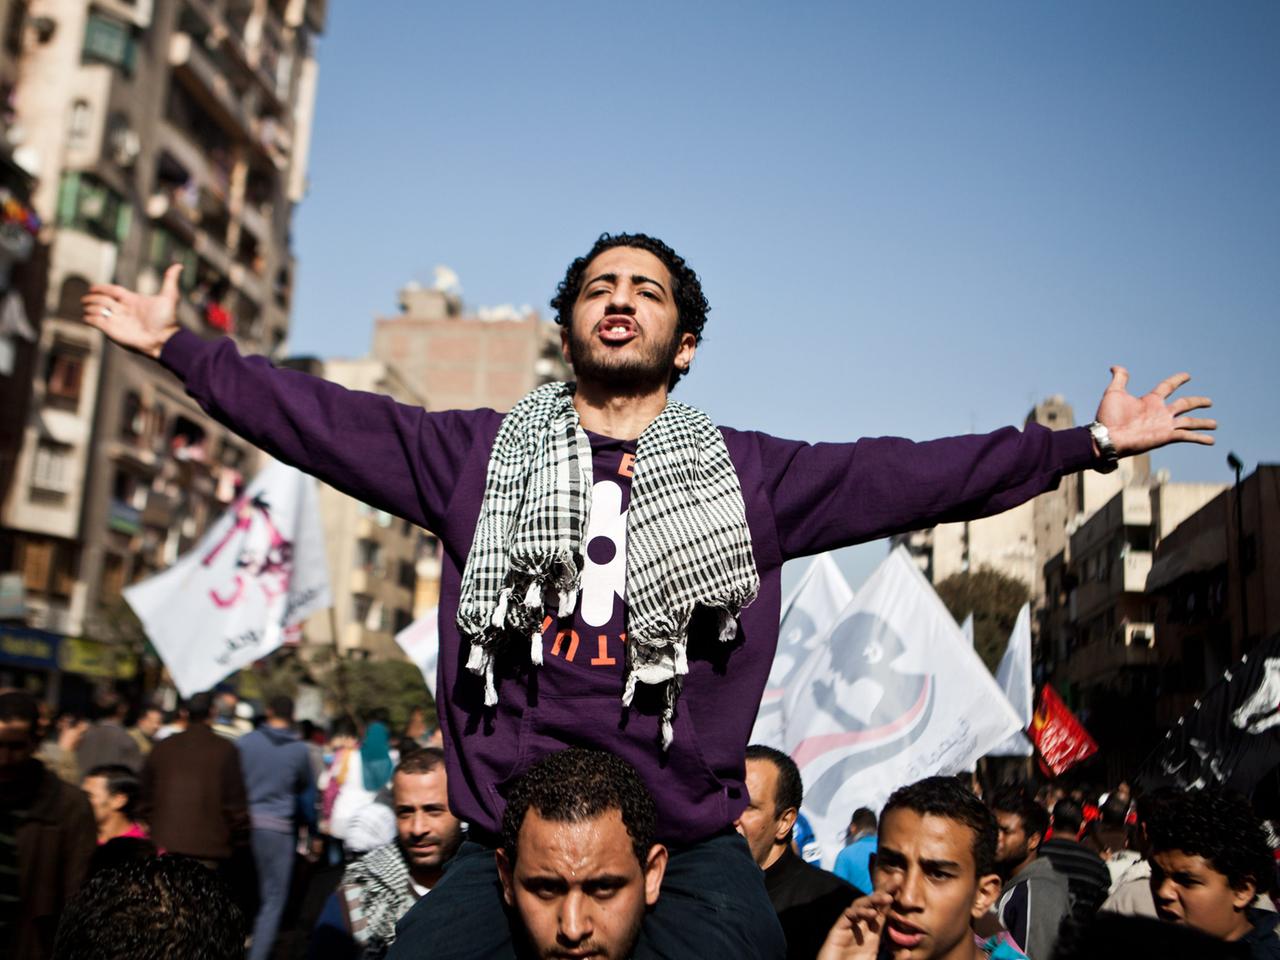 Mensch bei den Unruhen in Ägypten